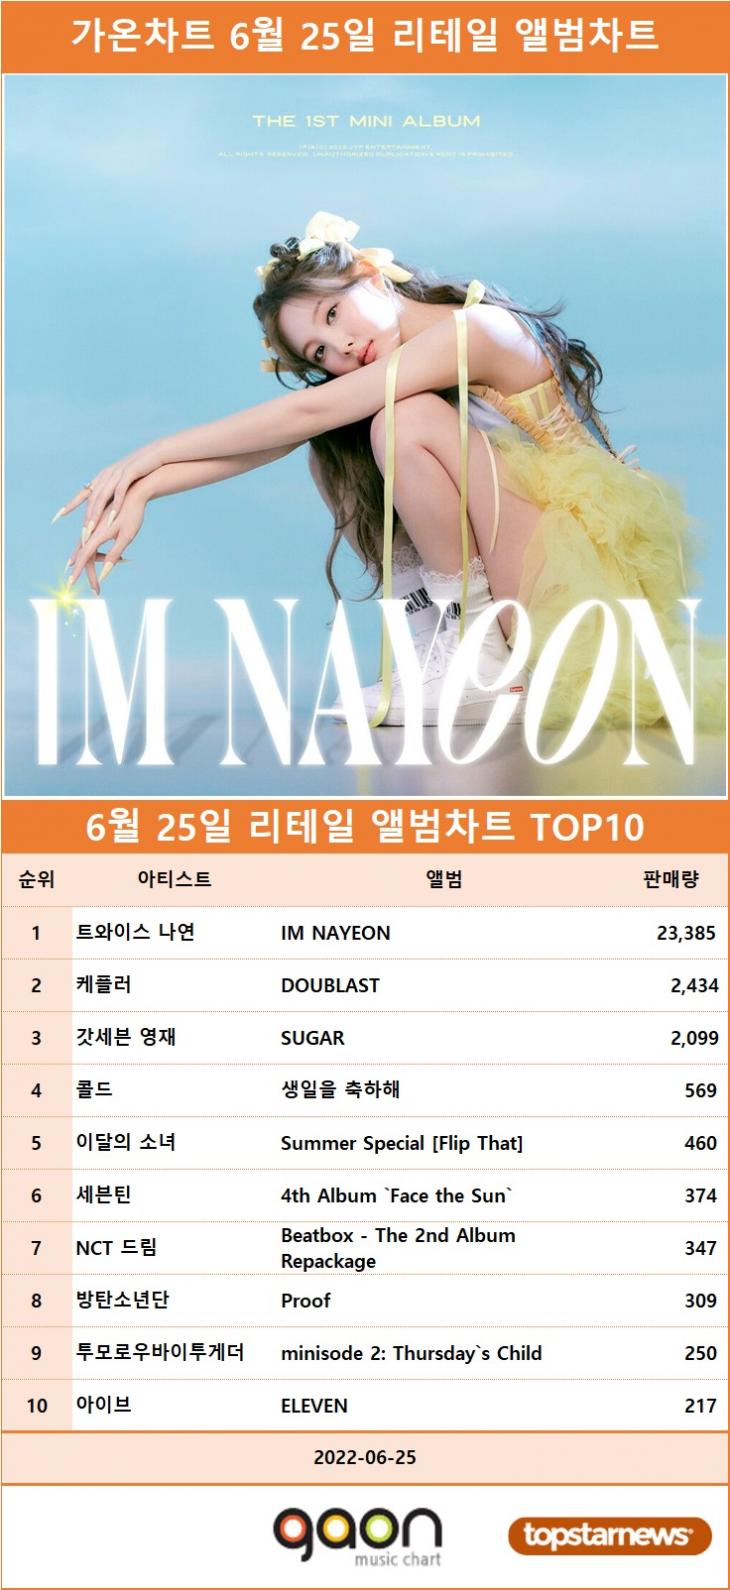 [표] 가온차트 6월 25일 리테일 앨범차트 1위는 트와이스 나연의 IM NAYEON